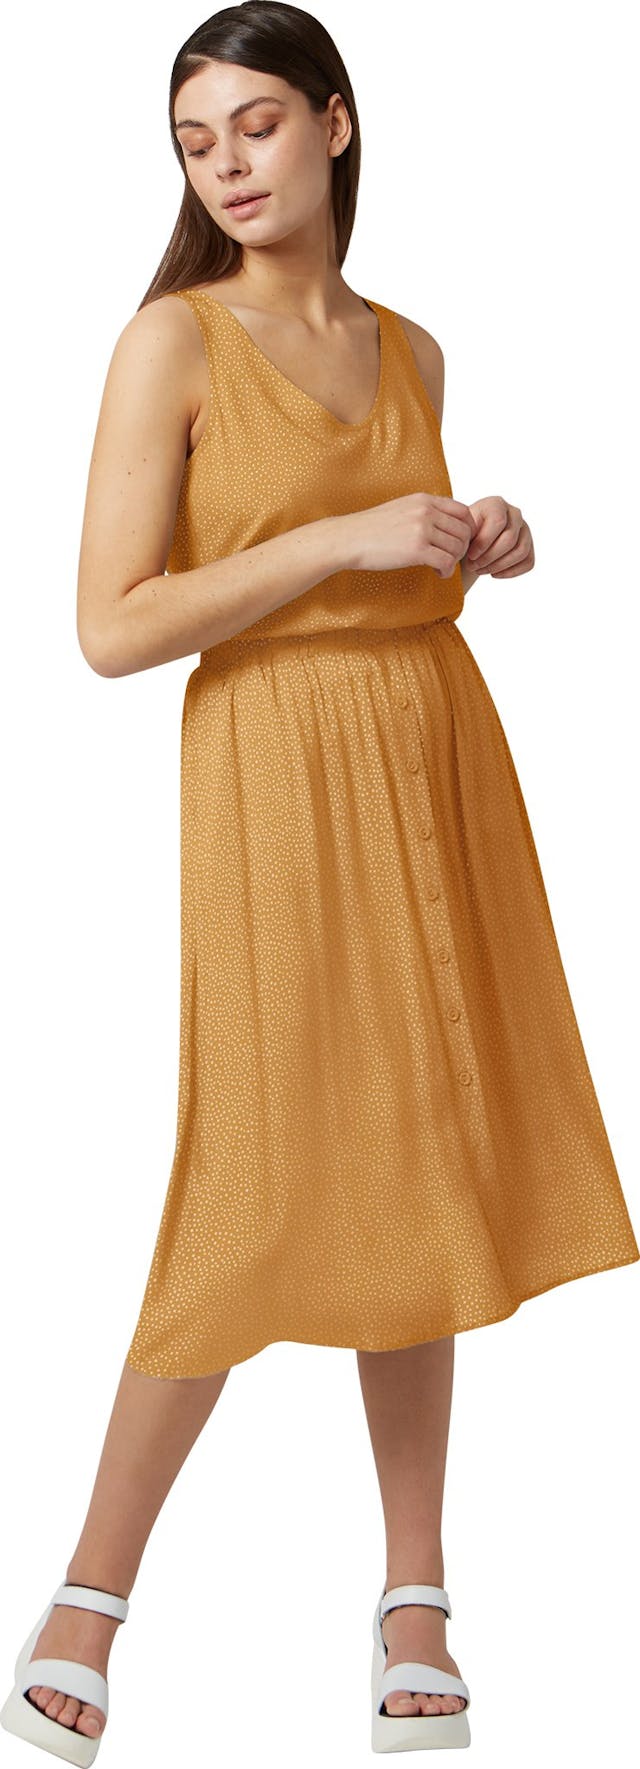 Product image for Ravenna Skirt - Women's